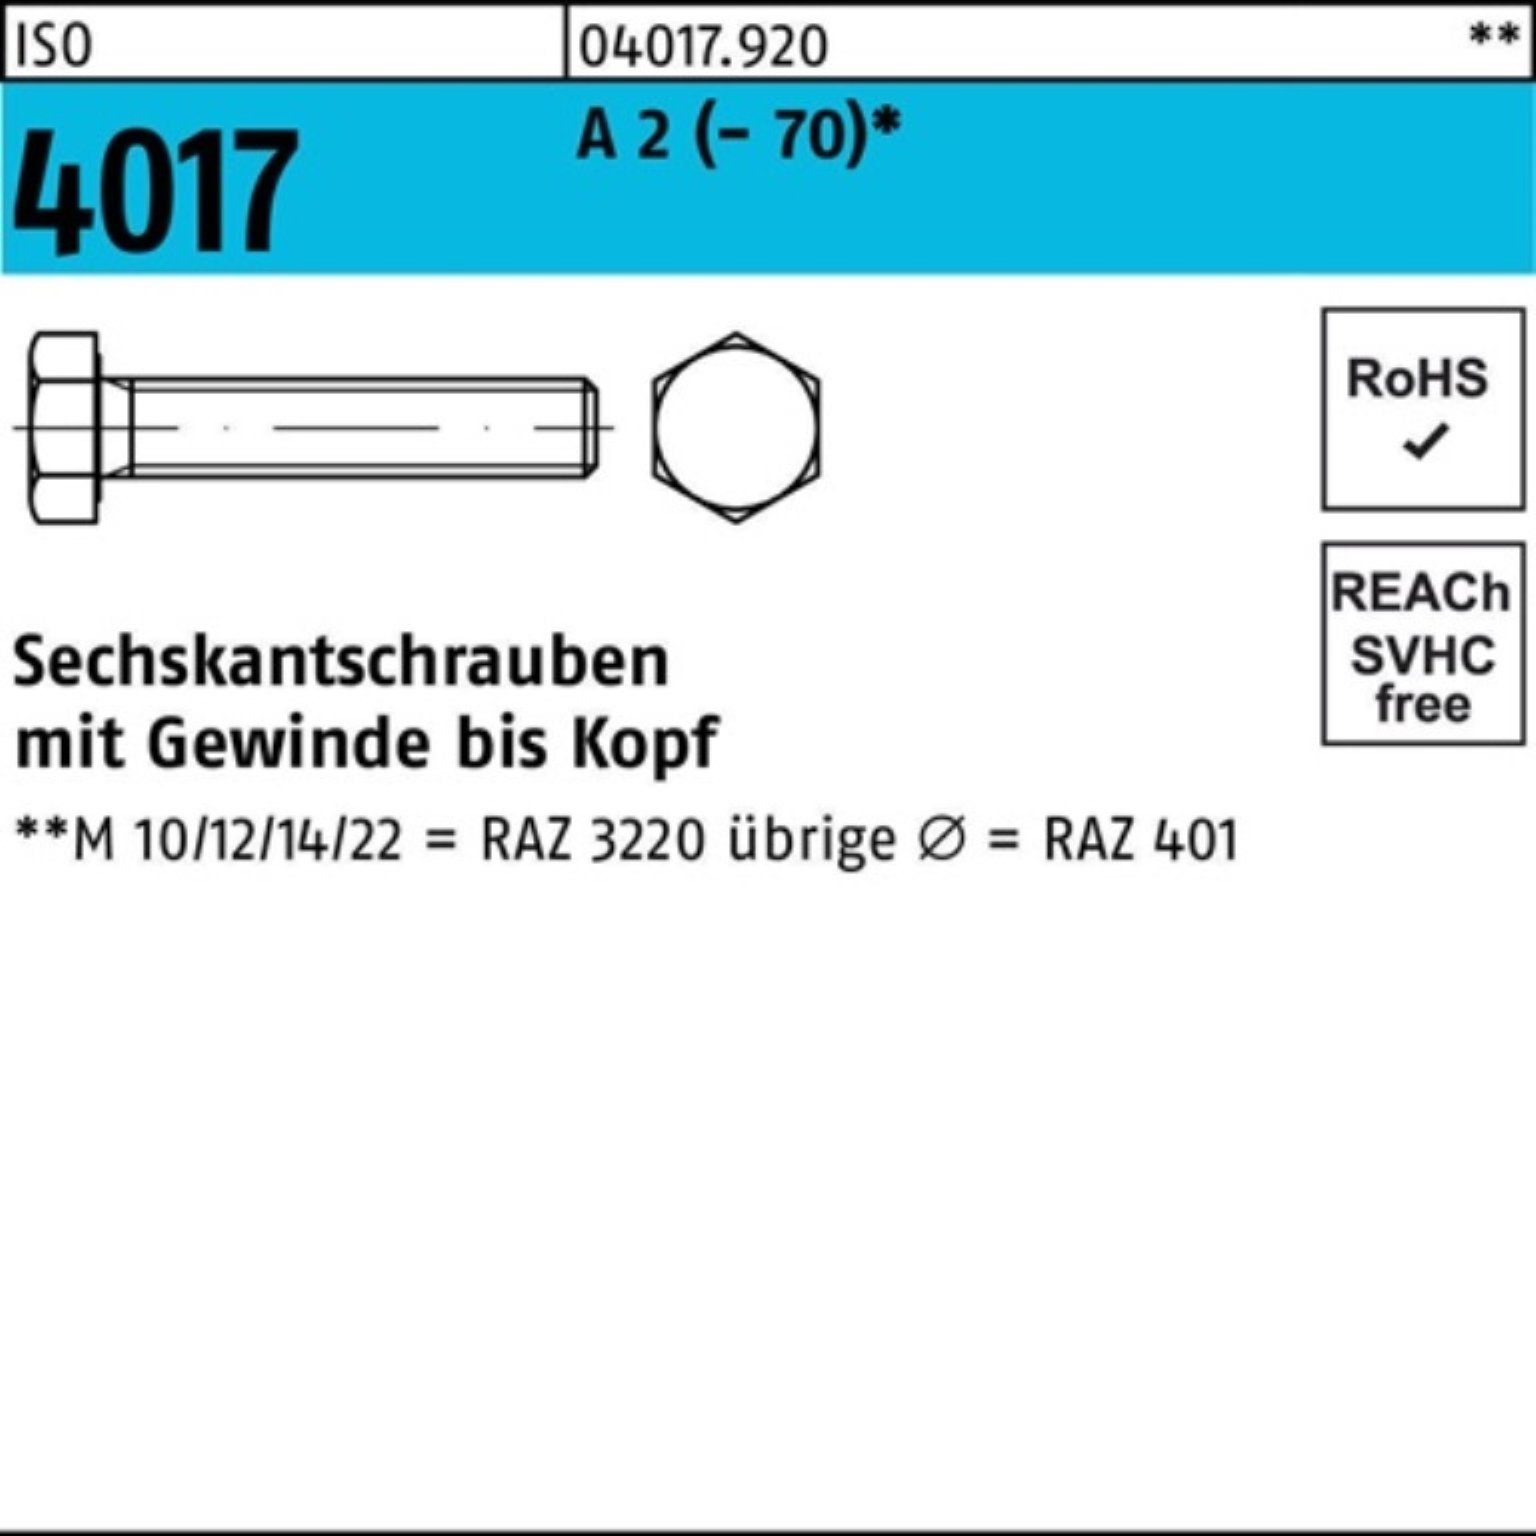 Bufab Sechskantschraube 100er Pack Sechskantschraube ISO 4017 VG M10x 22 A 2 (70) 100 Stück